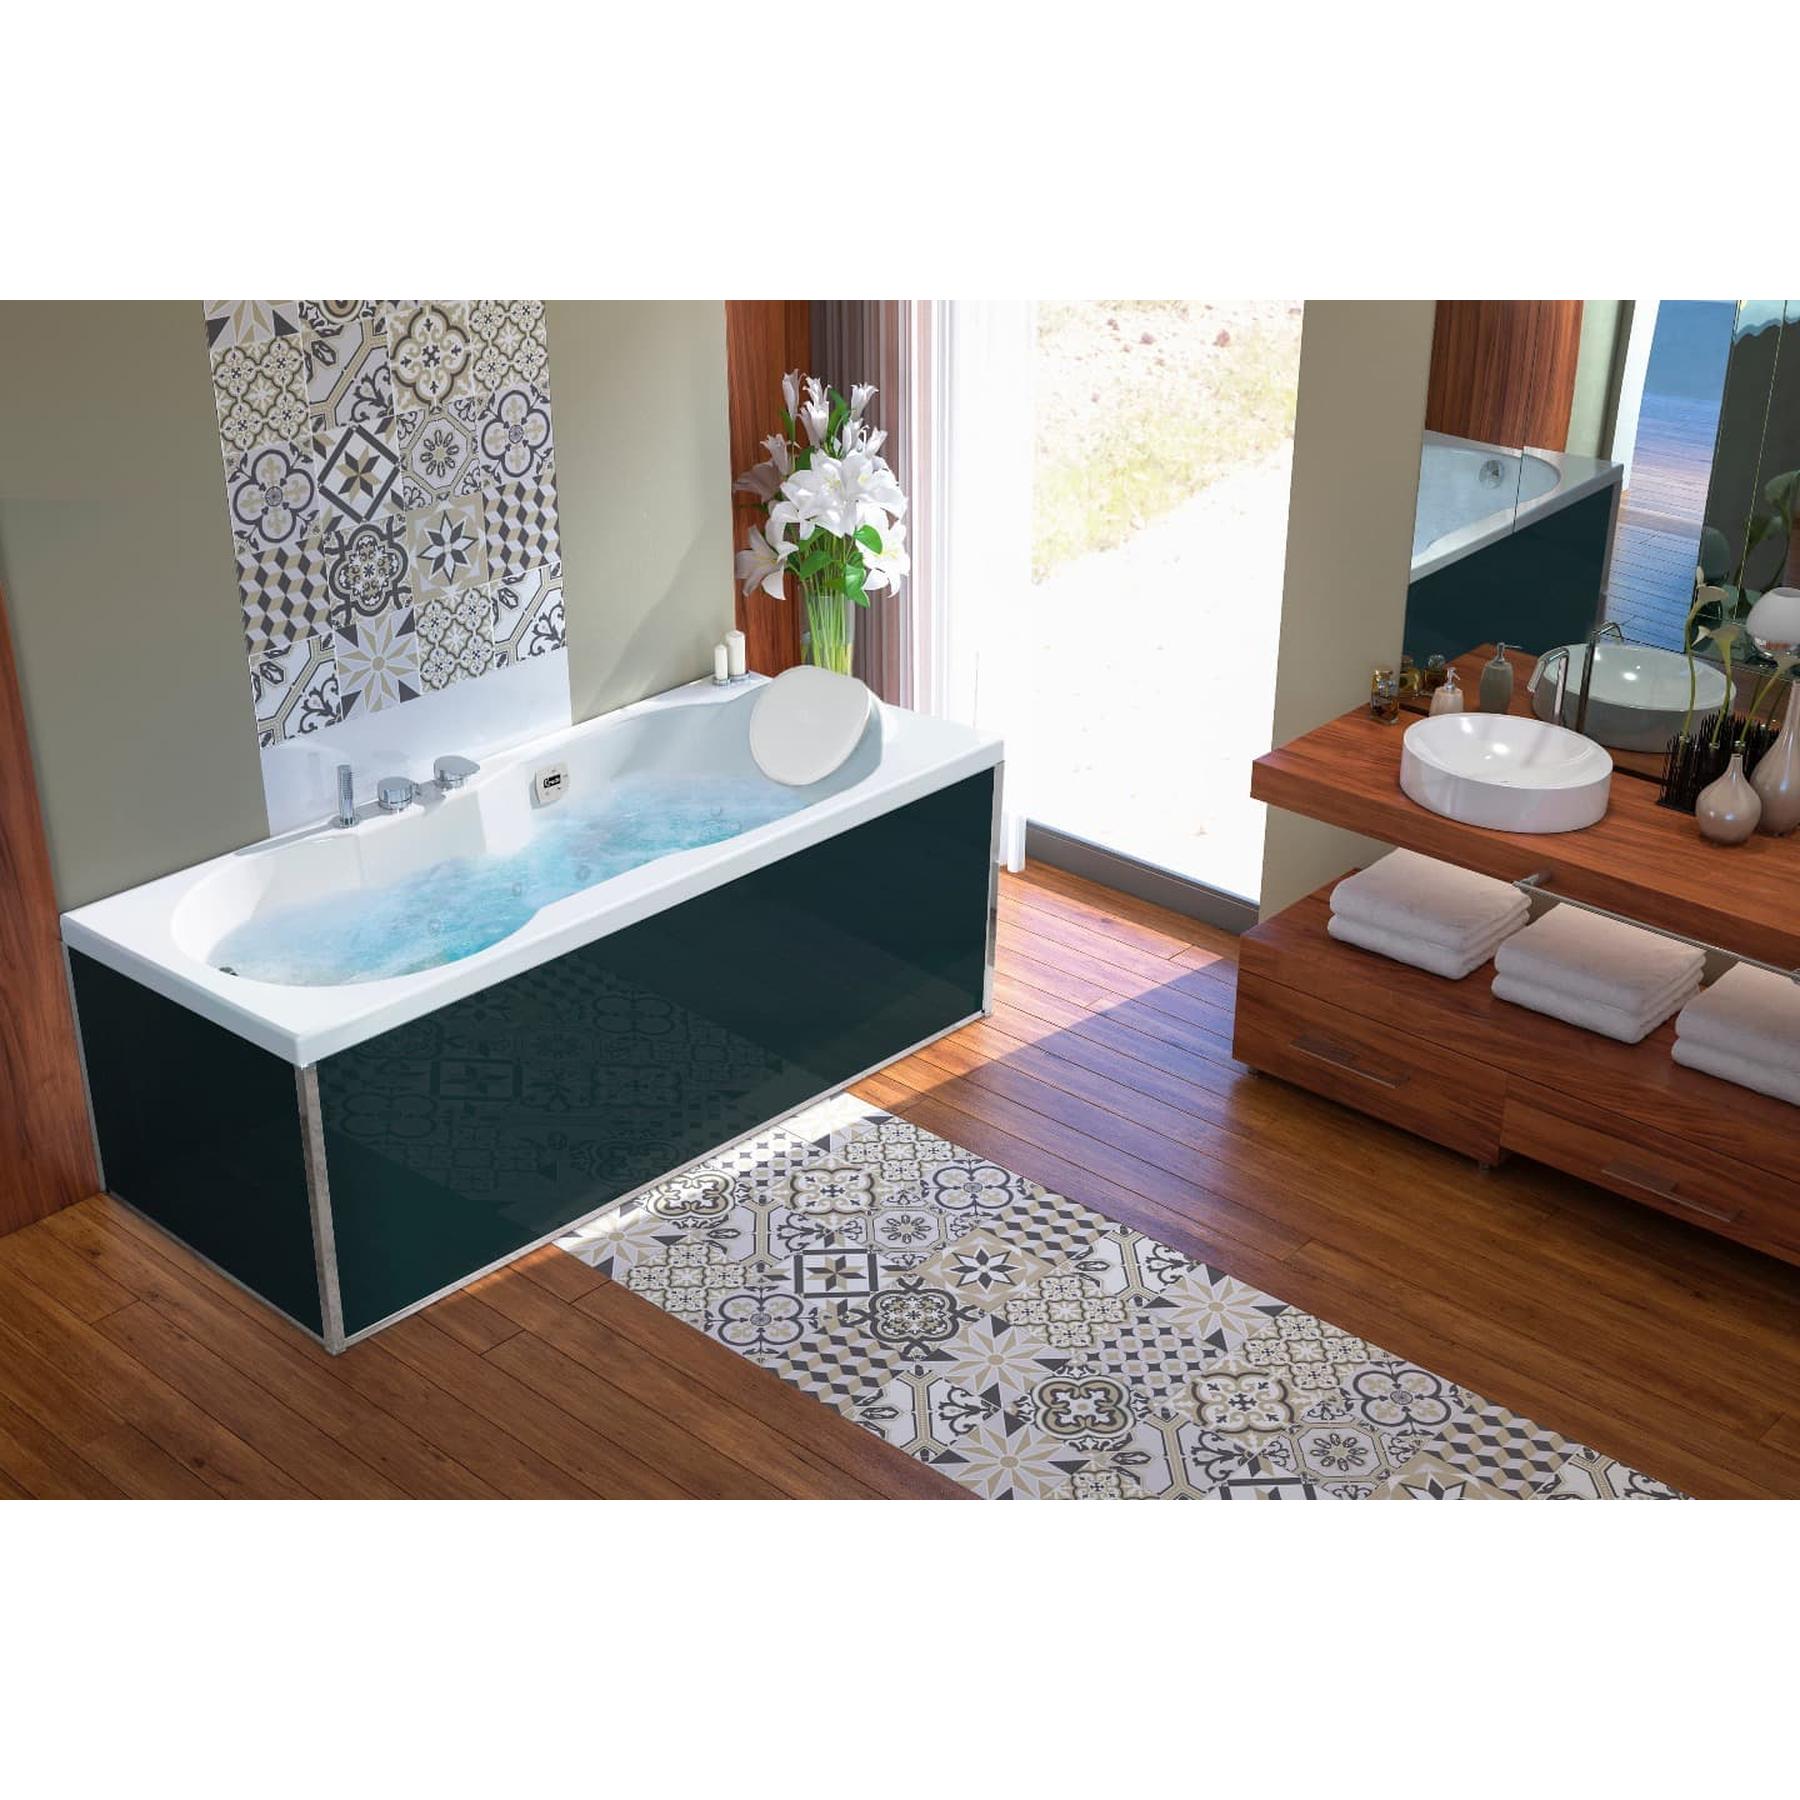 Tablier de baignoire en verre noir 95 compatible avec toutes les baignoires KINEDO rectangulaires sauf modèles STAR et SAMBA